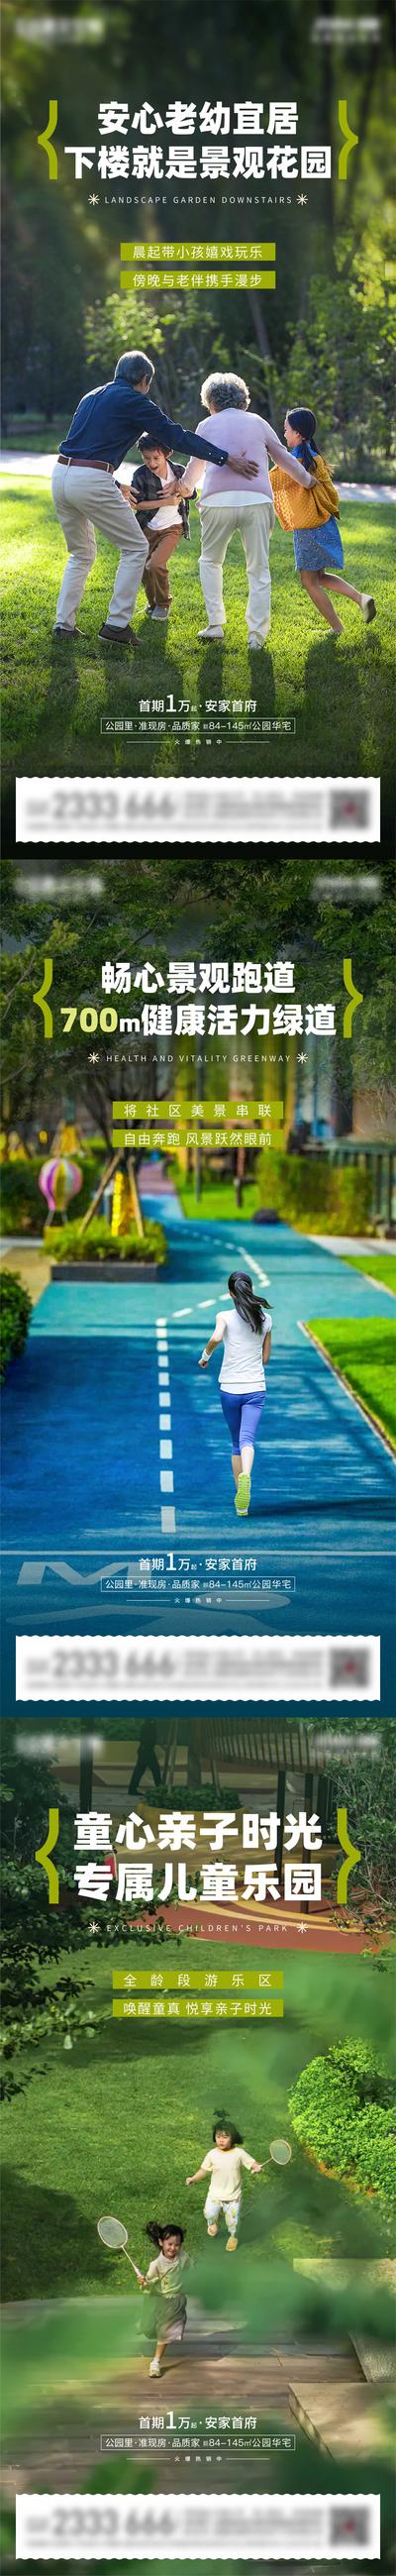 南门网 广告 海报 地产 园林 景观 社区 跑道 运动 配套 系列 价值点 生活 一家人